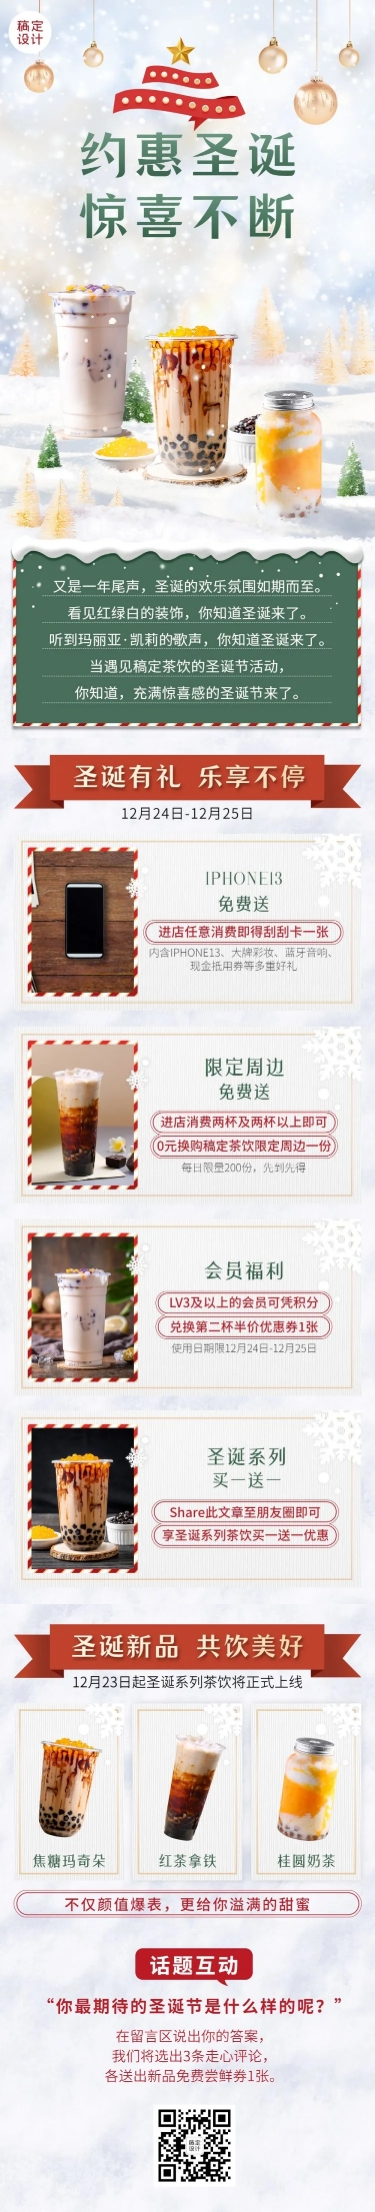 圣诞节奶茶饮品营销简约文章长图预览效果